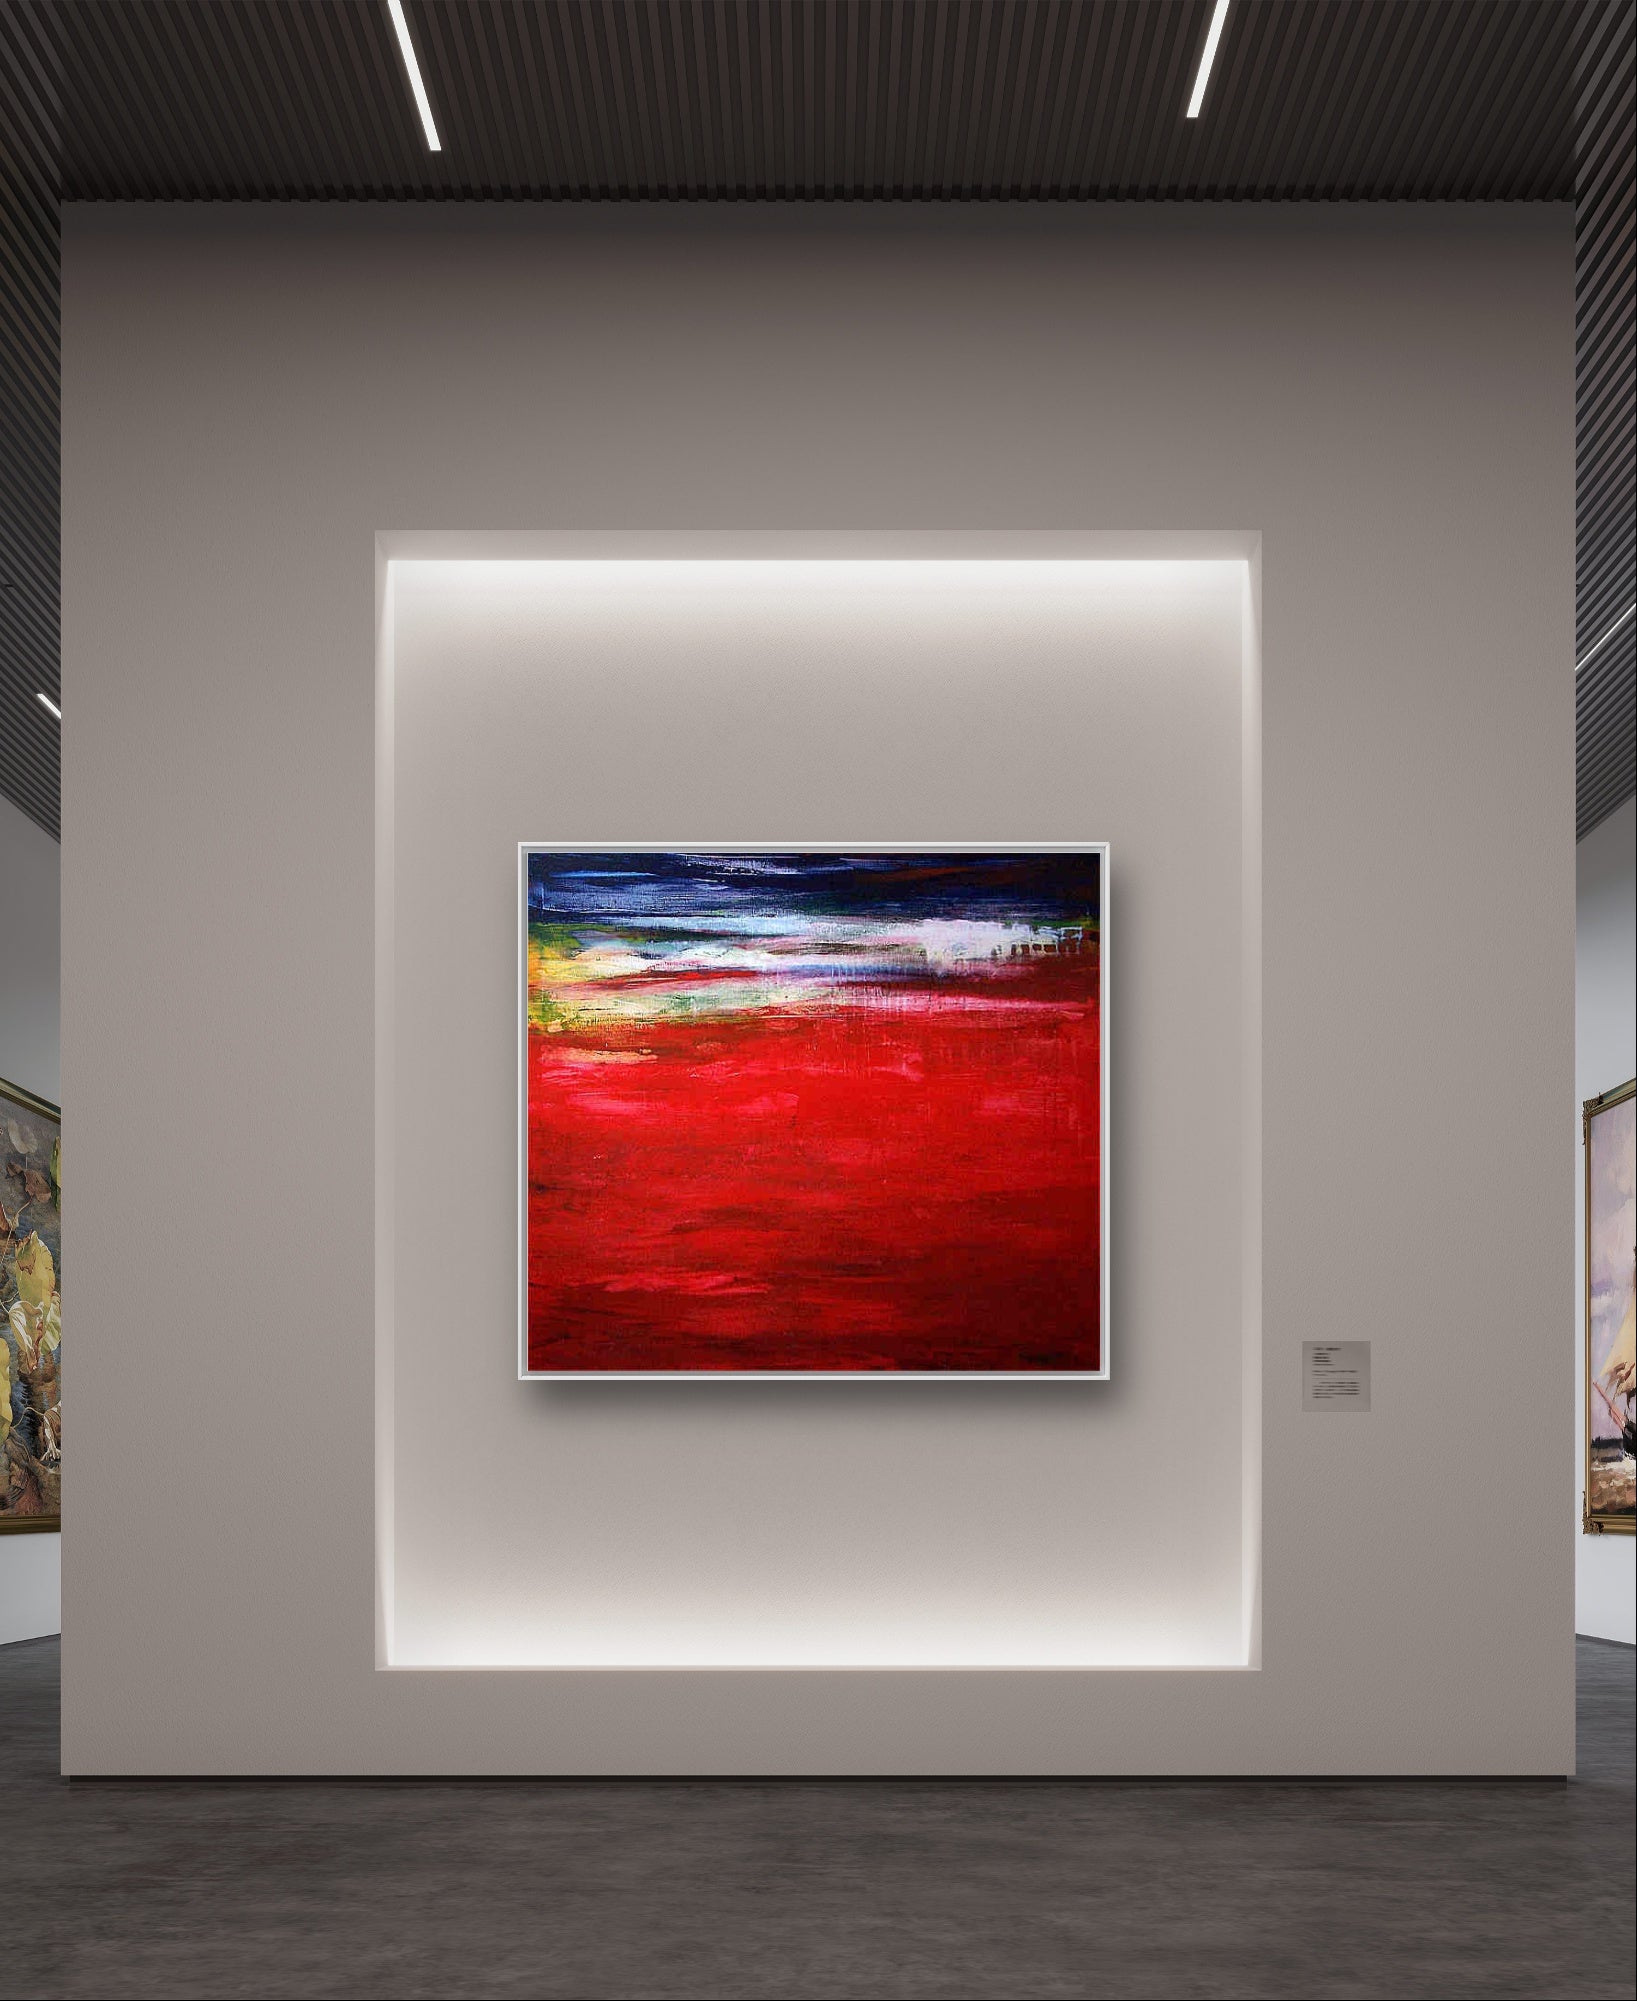 Auftragskunst, abstrakte Bilder, rotes abstraktes Bild als Auftragskunst bestellen "Traumreise",rotes-abstraktes-bild-1, abstrakte Bilder kaufen ,